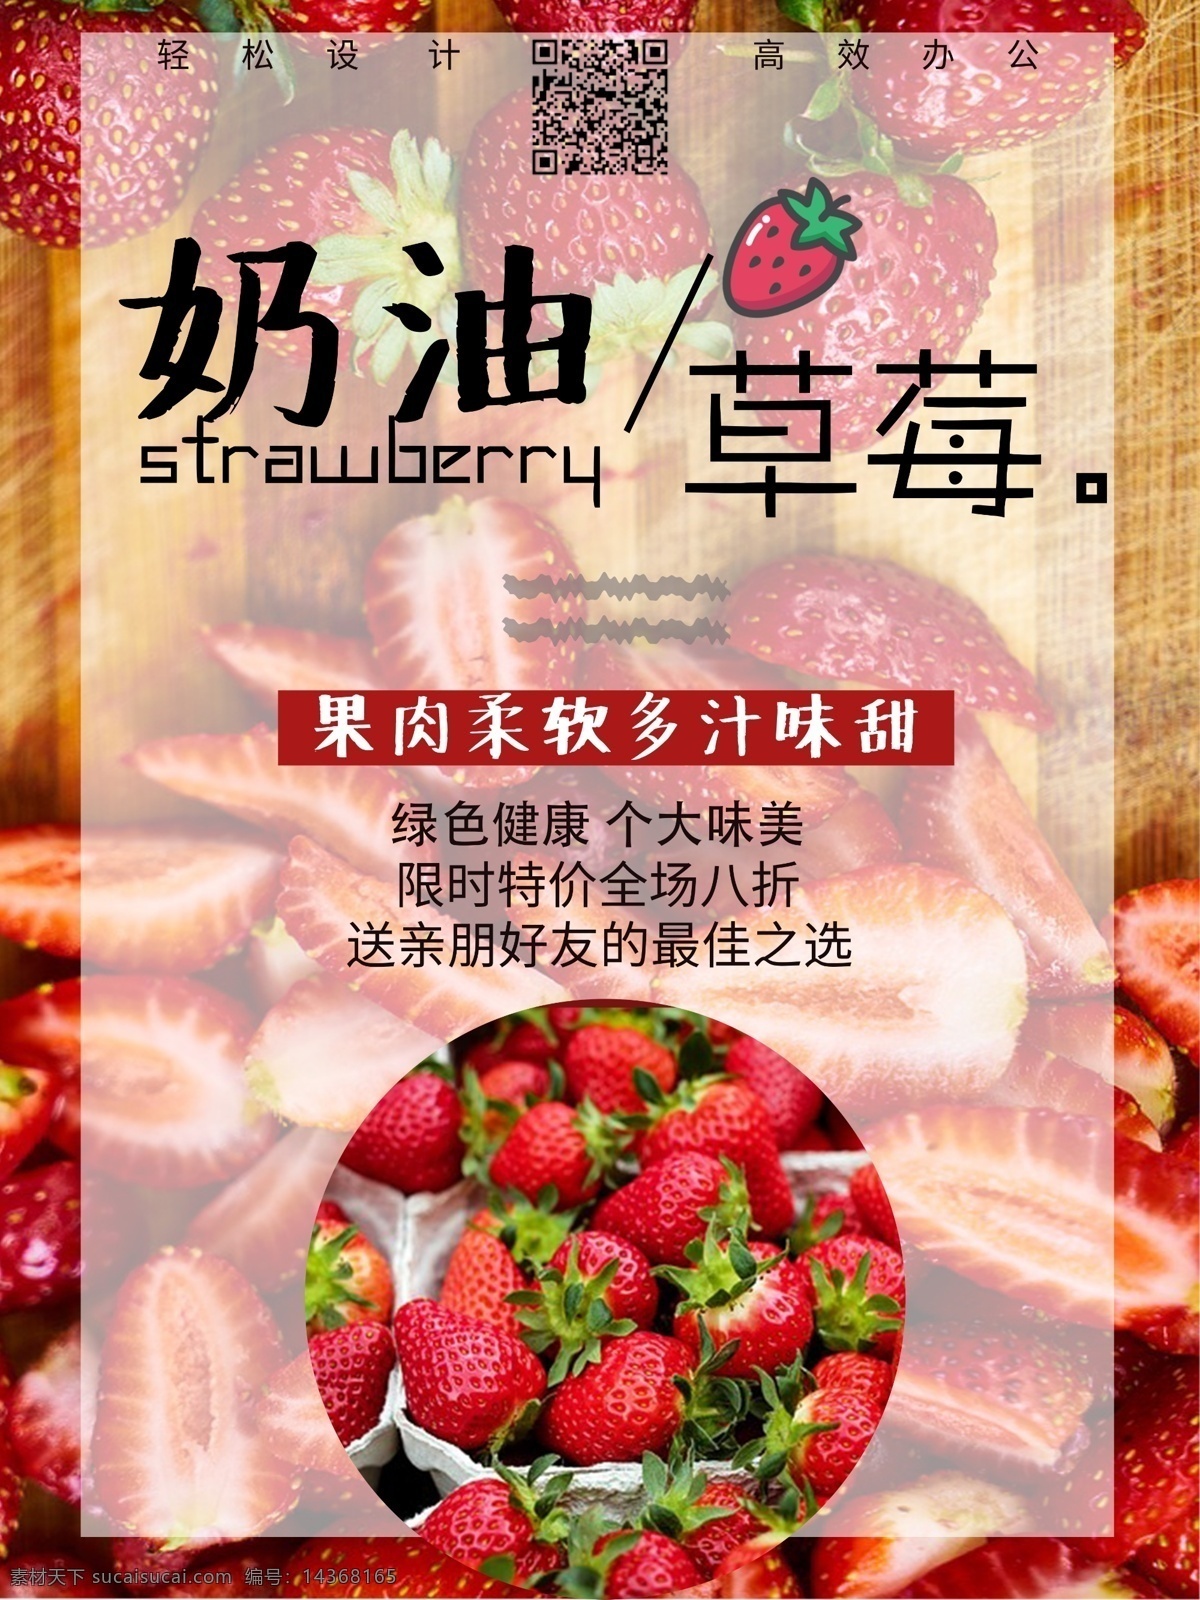 原创 水果 奶油 草莓 海报 可爱 风 小 清新 简约 小清新 设计感